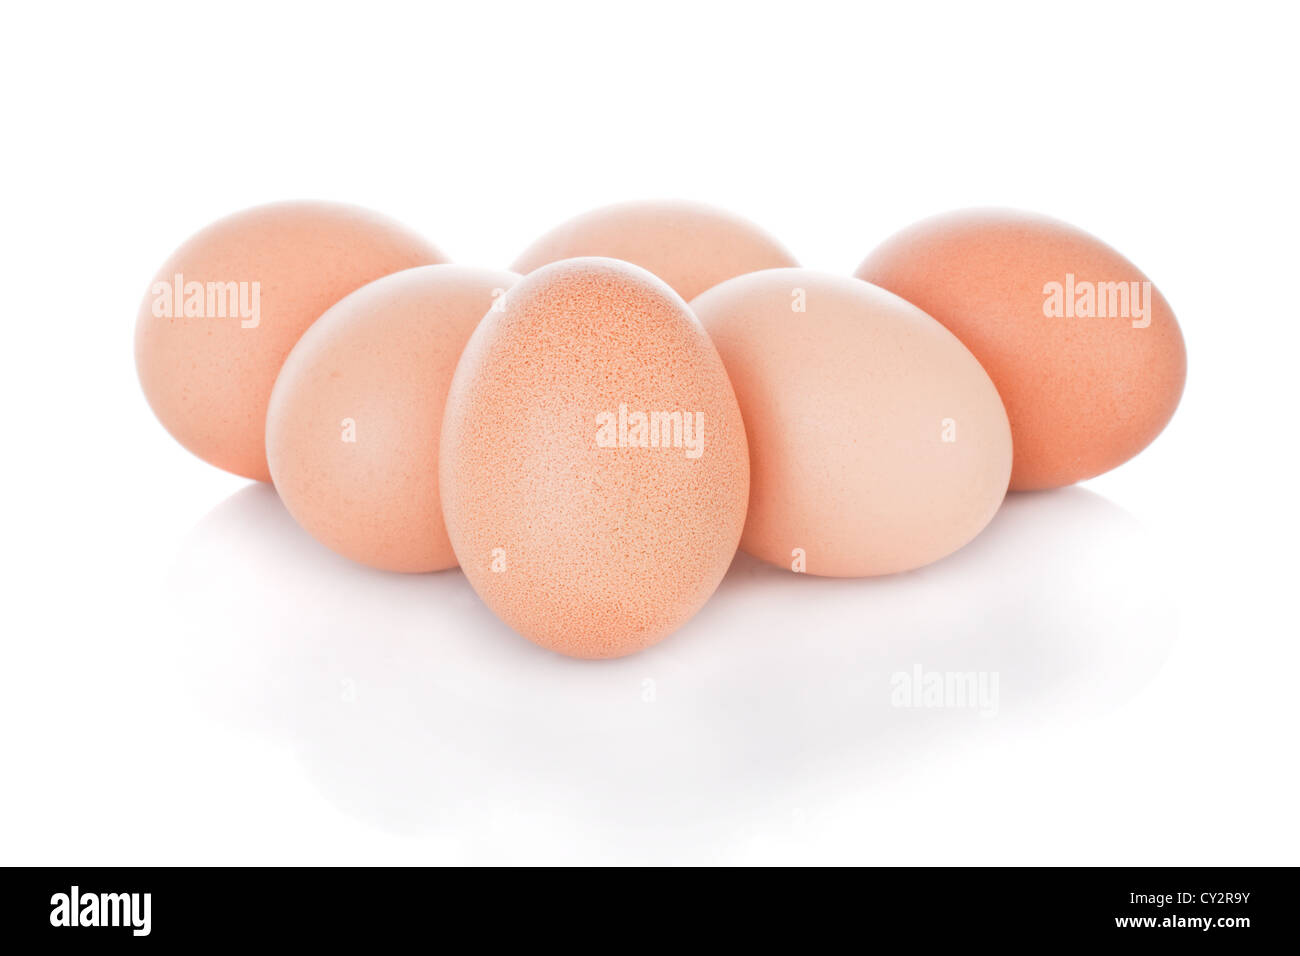 Half dozen brown chicken eggs isolated on white background Stock Photo